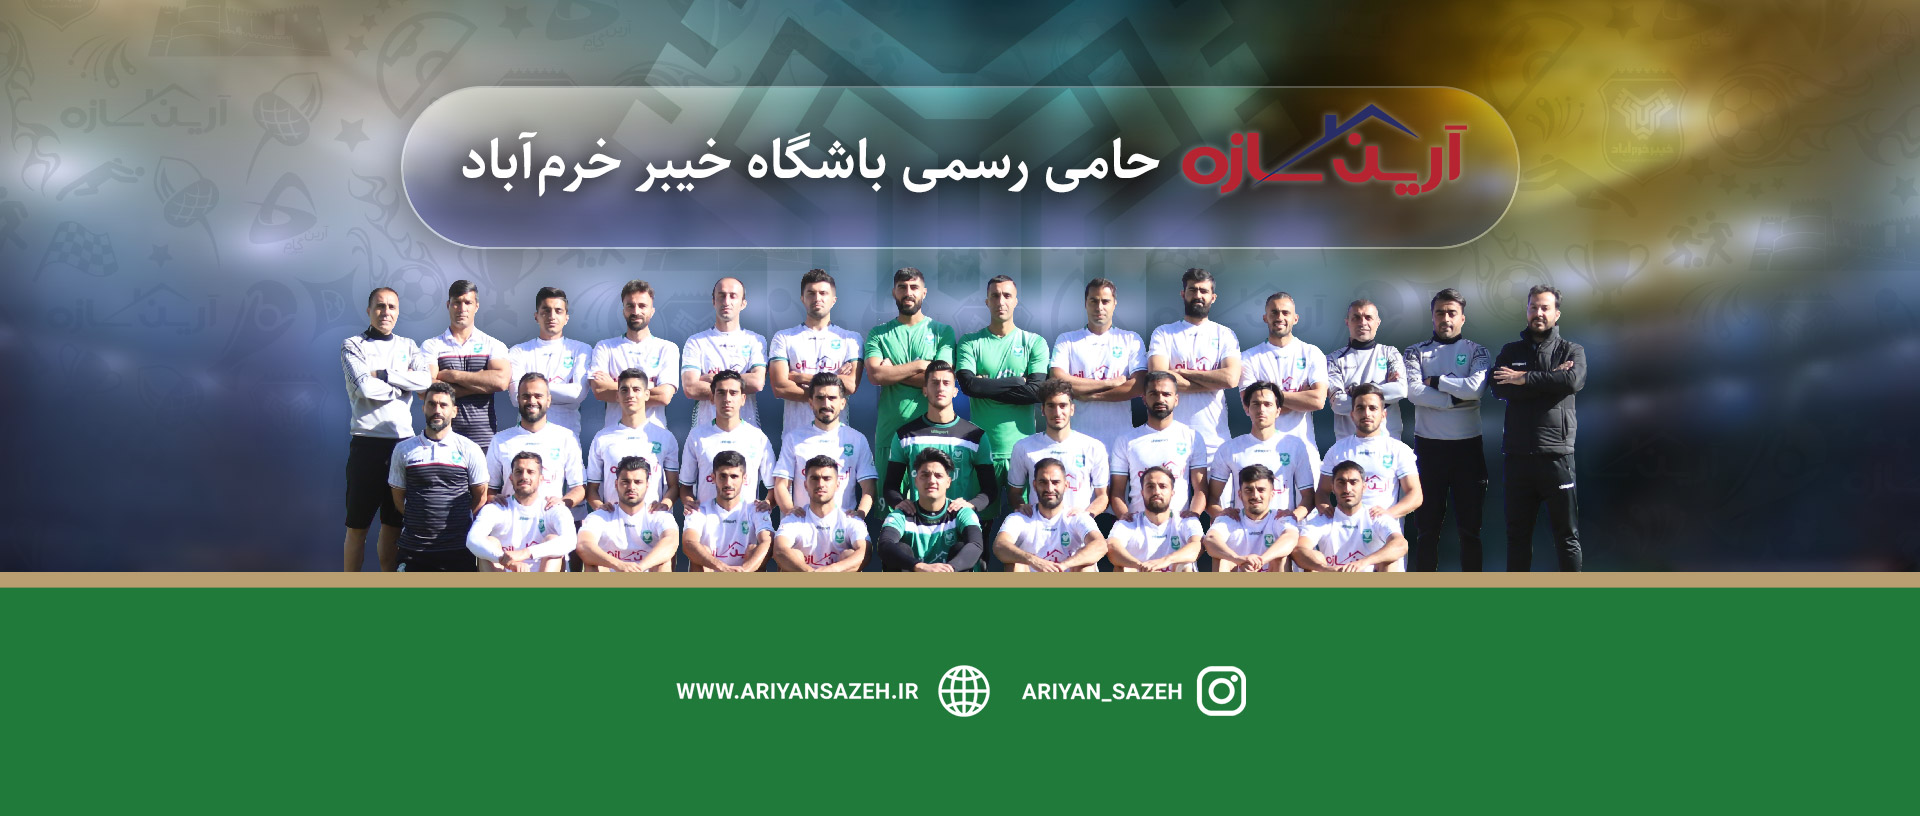 بیانیه رسمی باشگاه خیبر خرم آباد در خصوص اشتباهات داوری در دیدار مقابل ویستاتوربین تهران